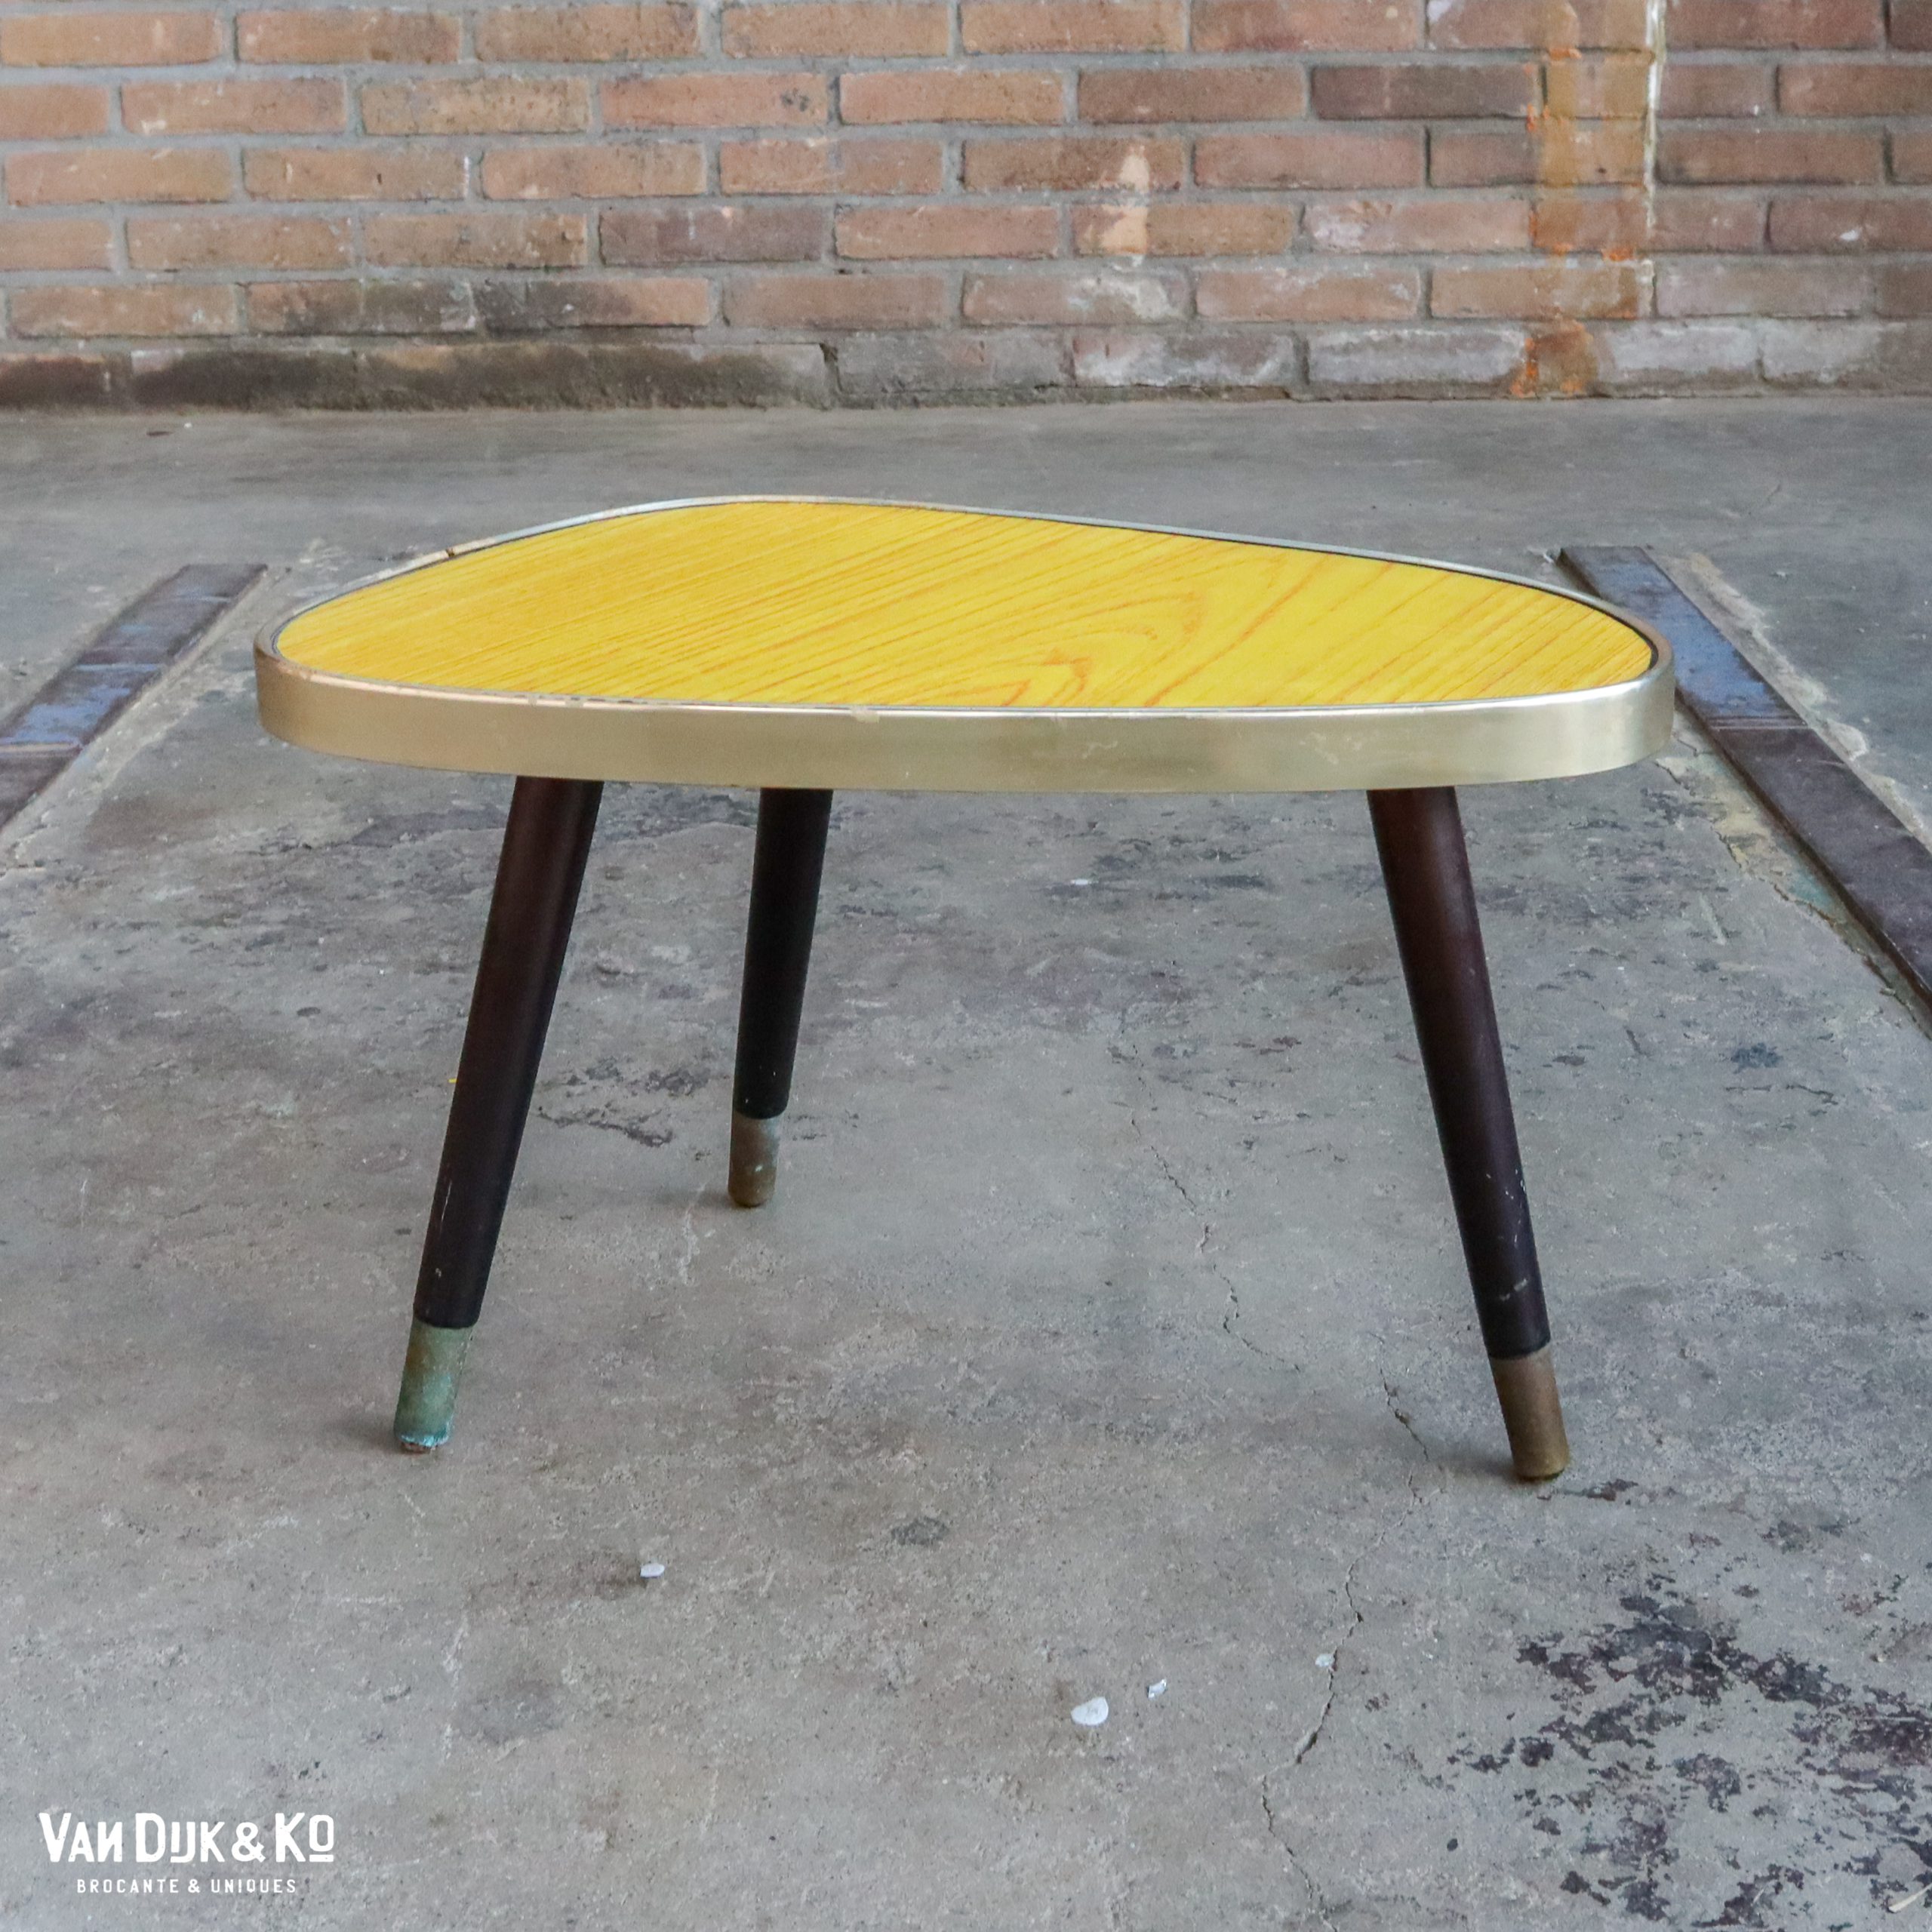 formica tafel klein » Van Dijk